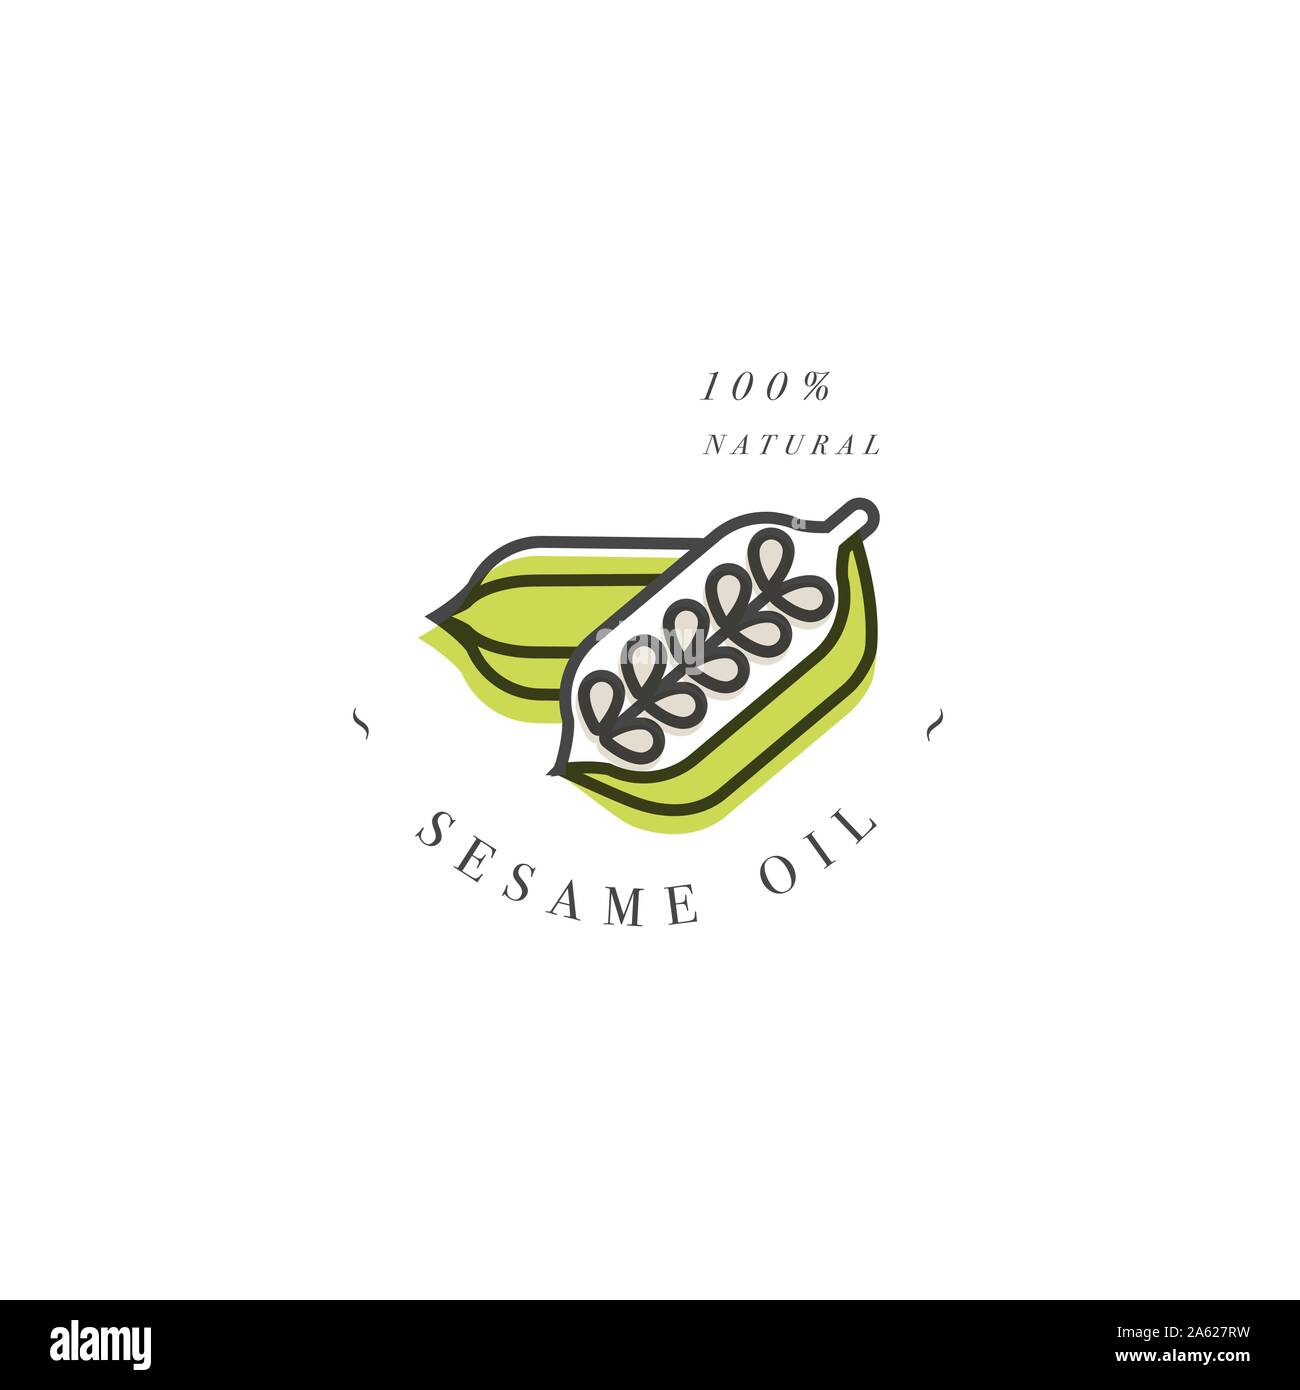 Vecteur élément de conception et icône dans le style linéaire - huile de graines de sésame - nourriture végétalienne saine. Illustration de Vecteur